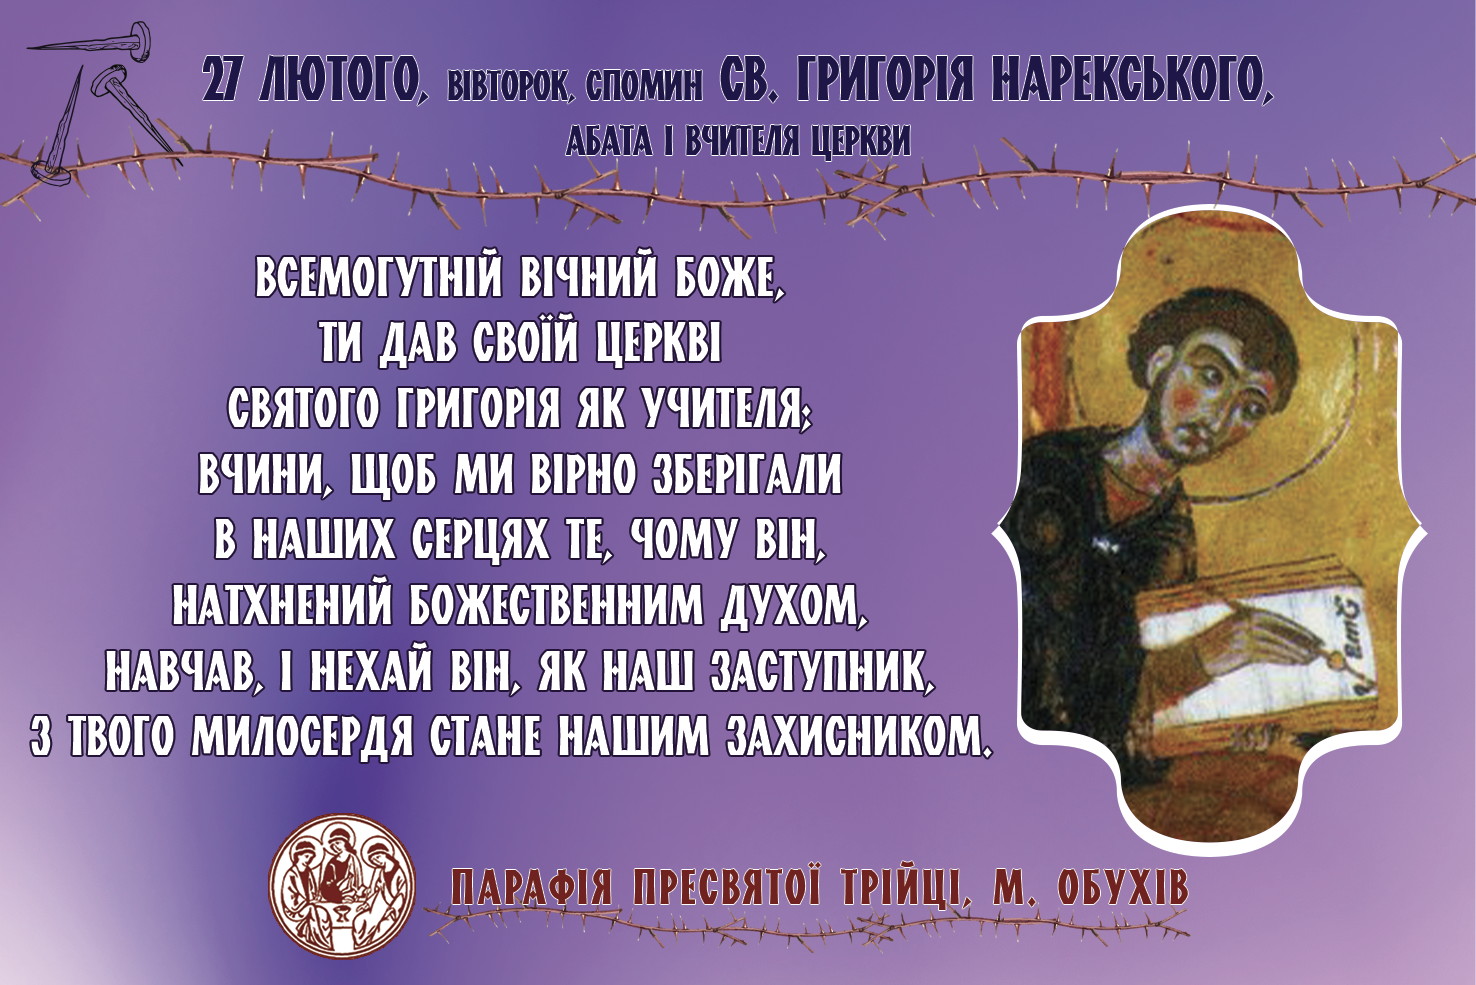 27 лютого, вівторок, довільний спомин св. Григорія Нарекського, абата і Вчителя Церкви.